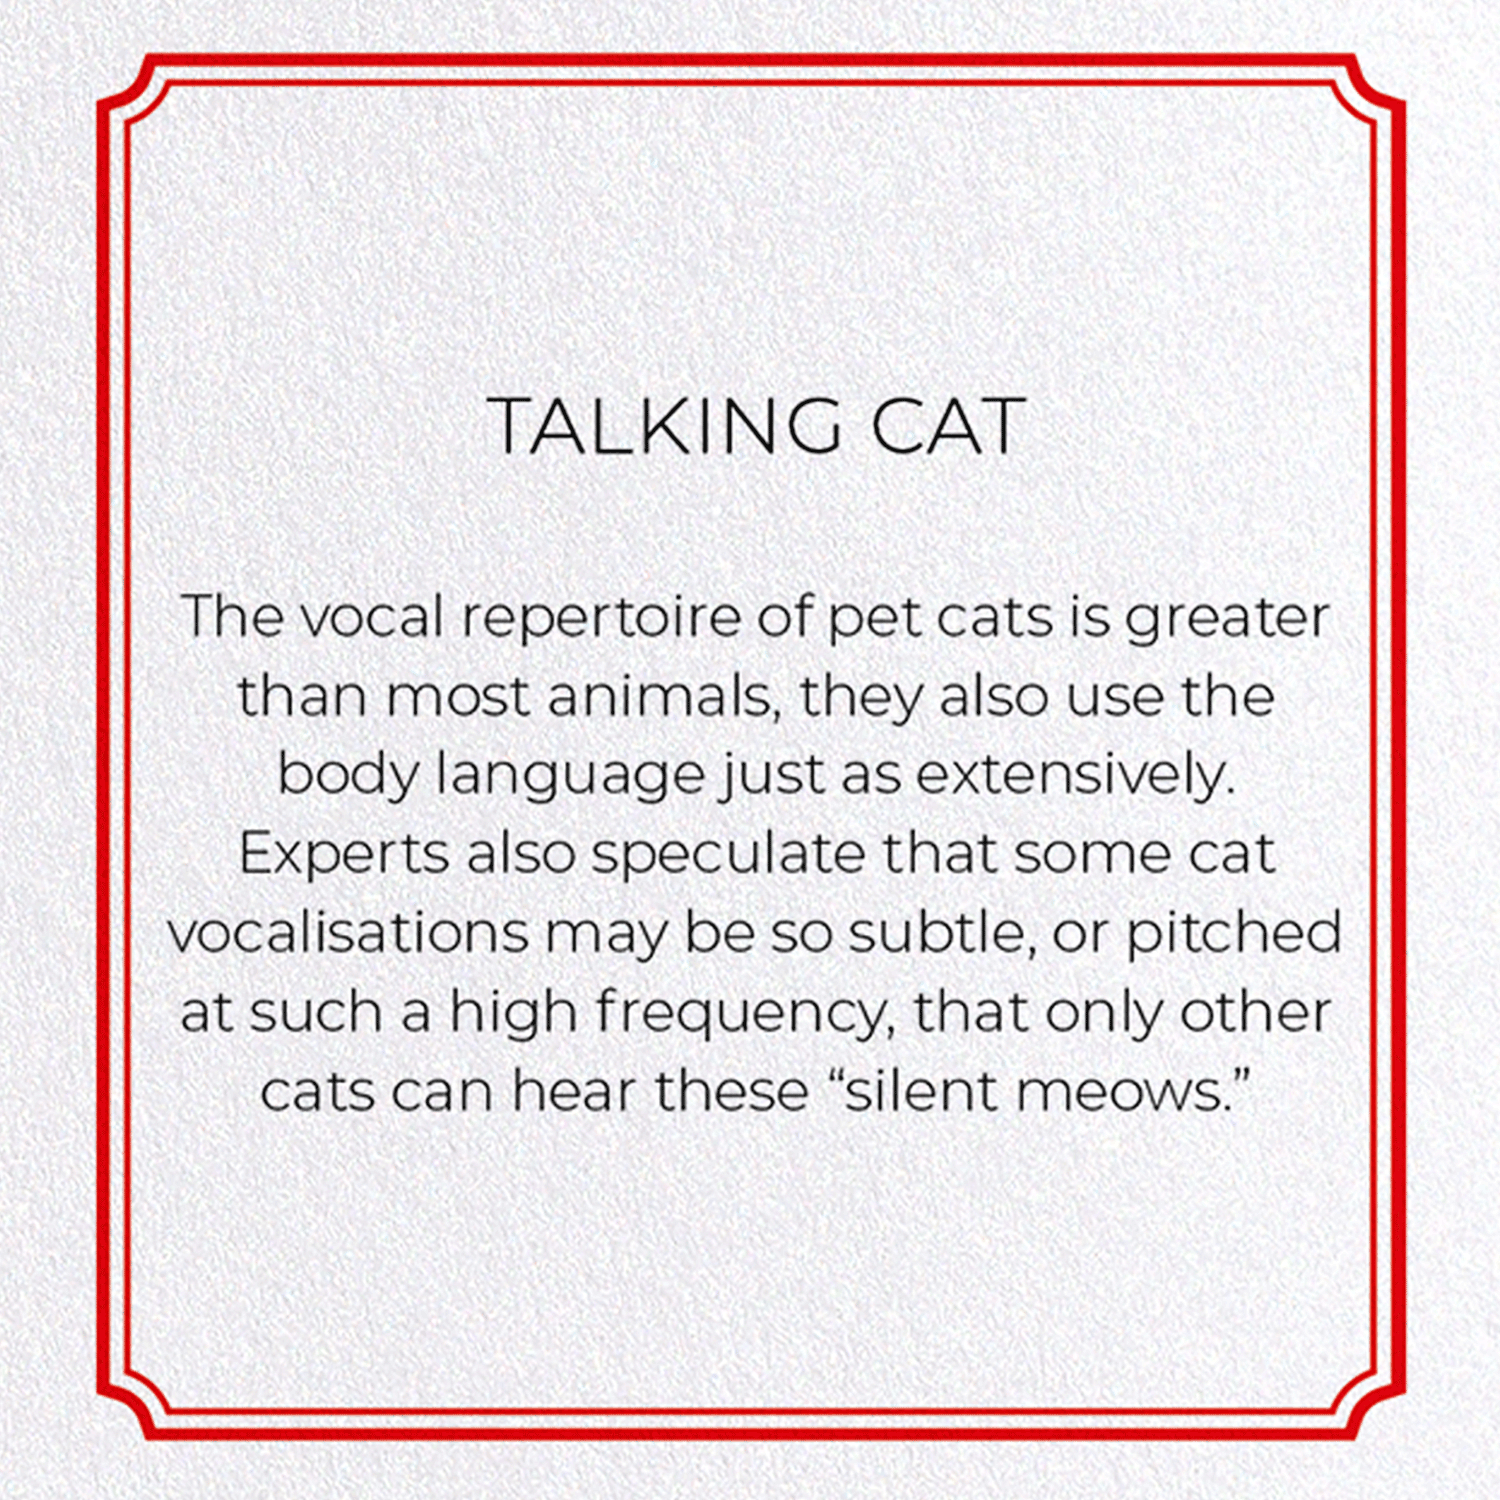 TALKING CAT